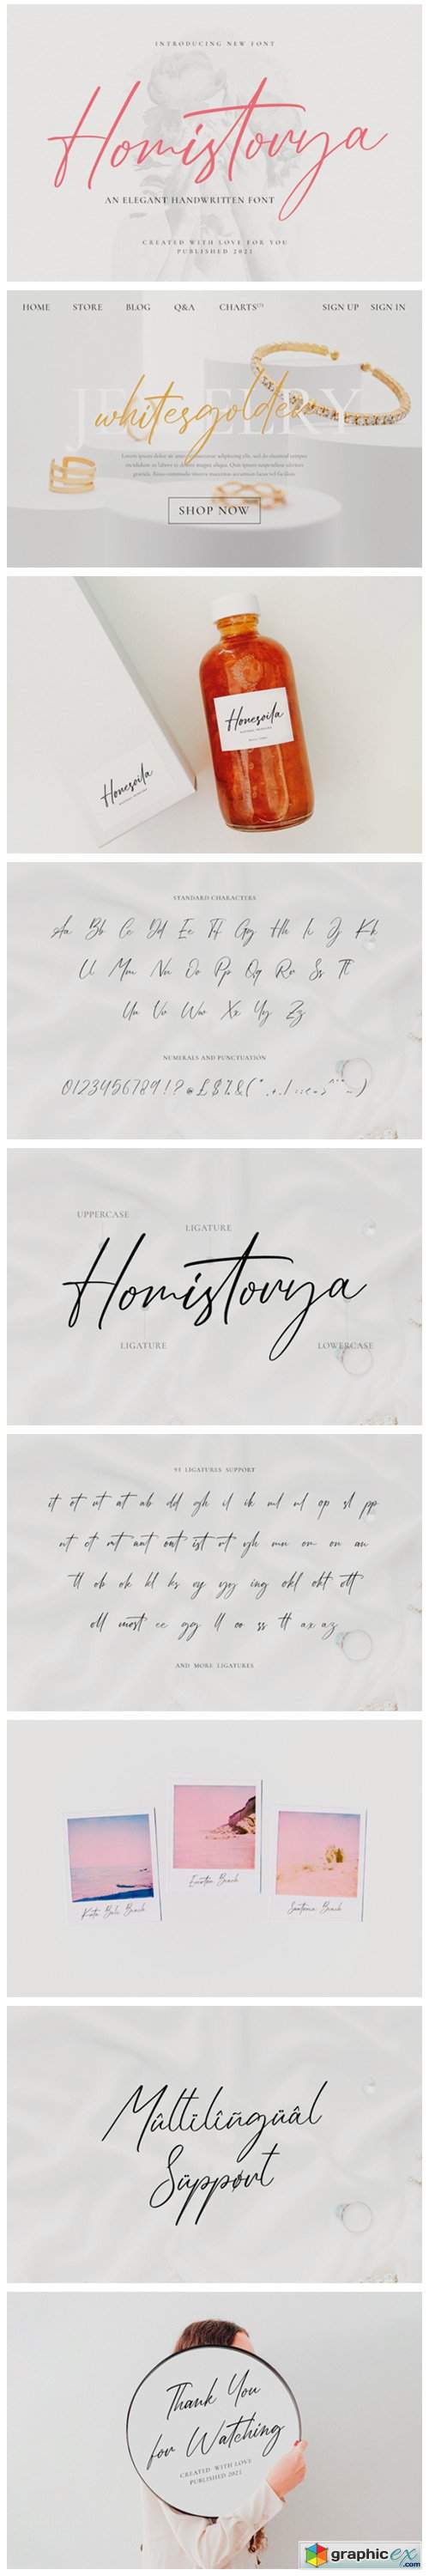  Homistorya Font 